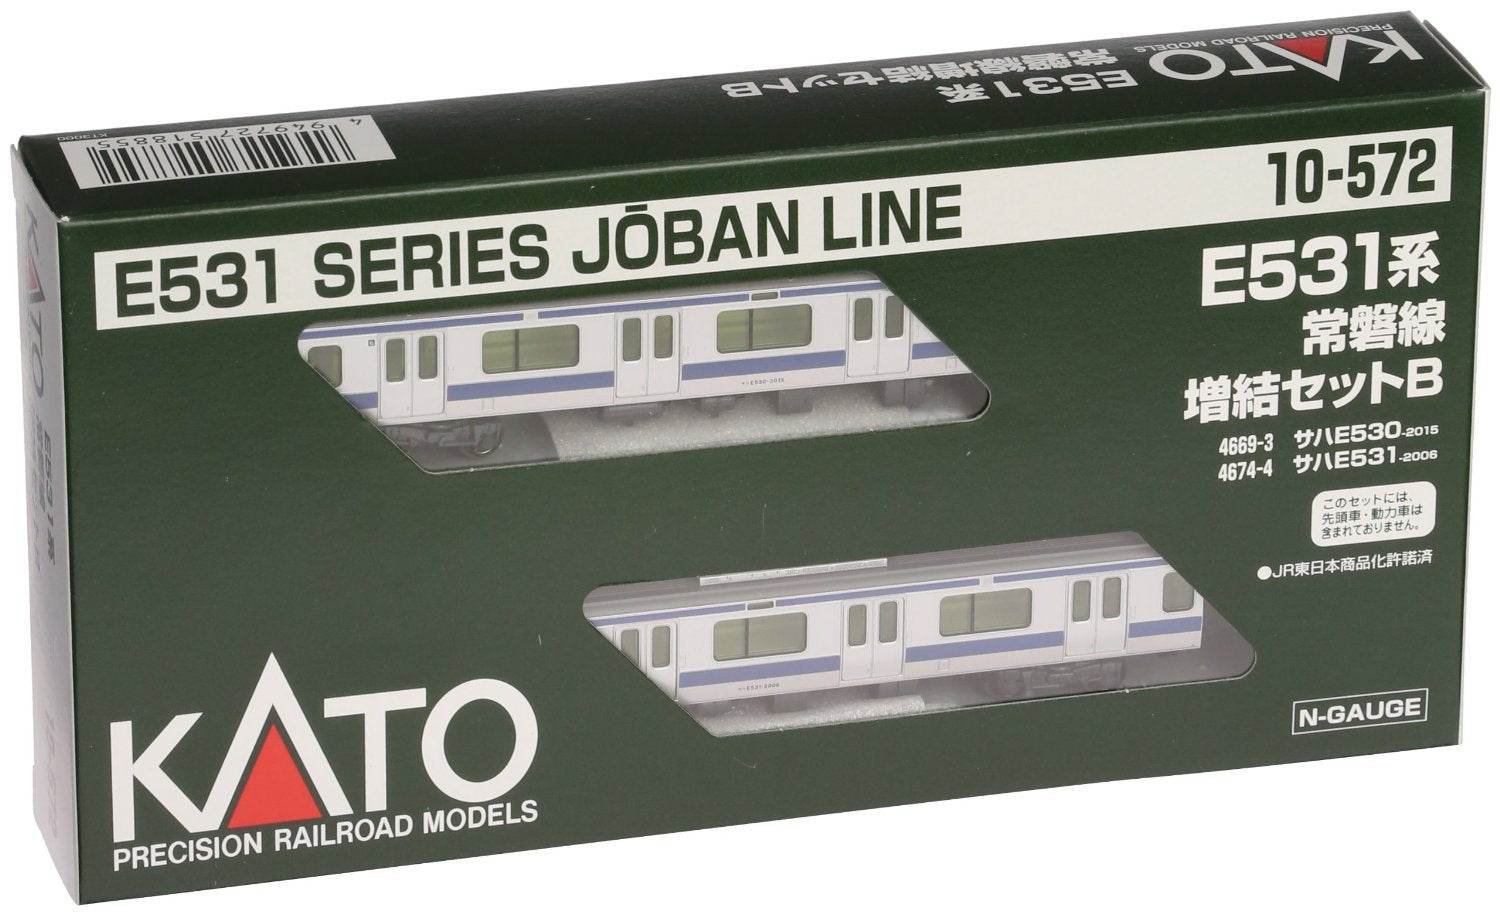 10-572 E531 Series Joban Line 2 Car Set